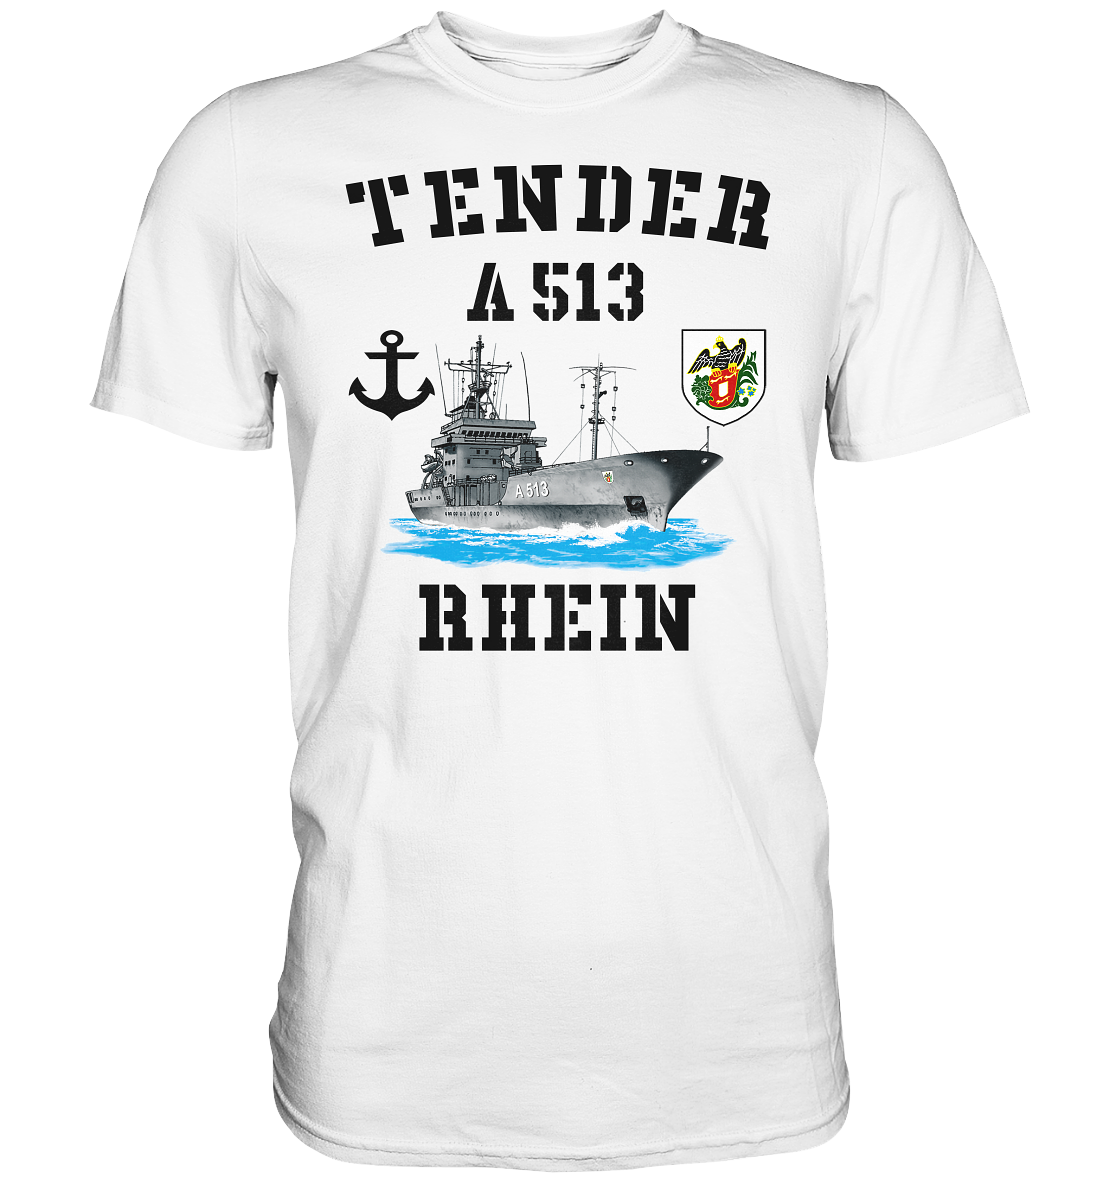 Tender A513 RHEIN Anker - Premium Shirt